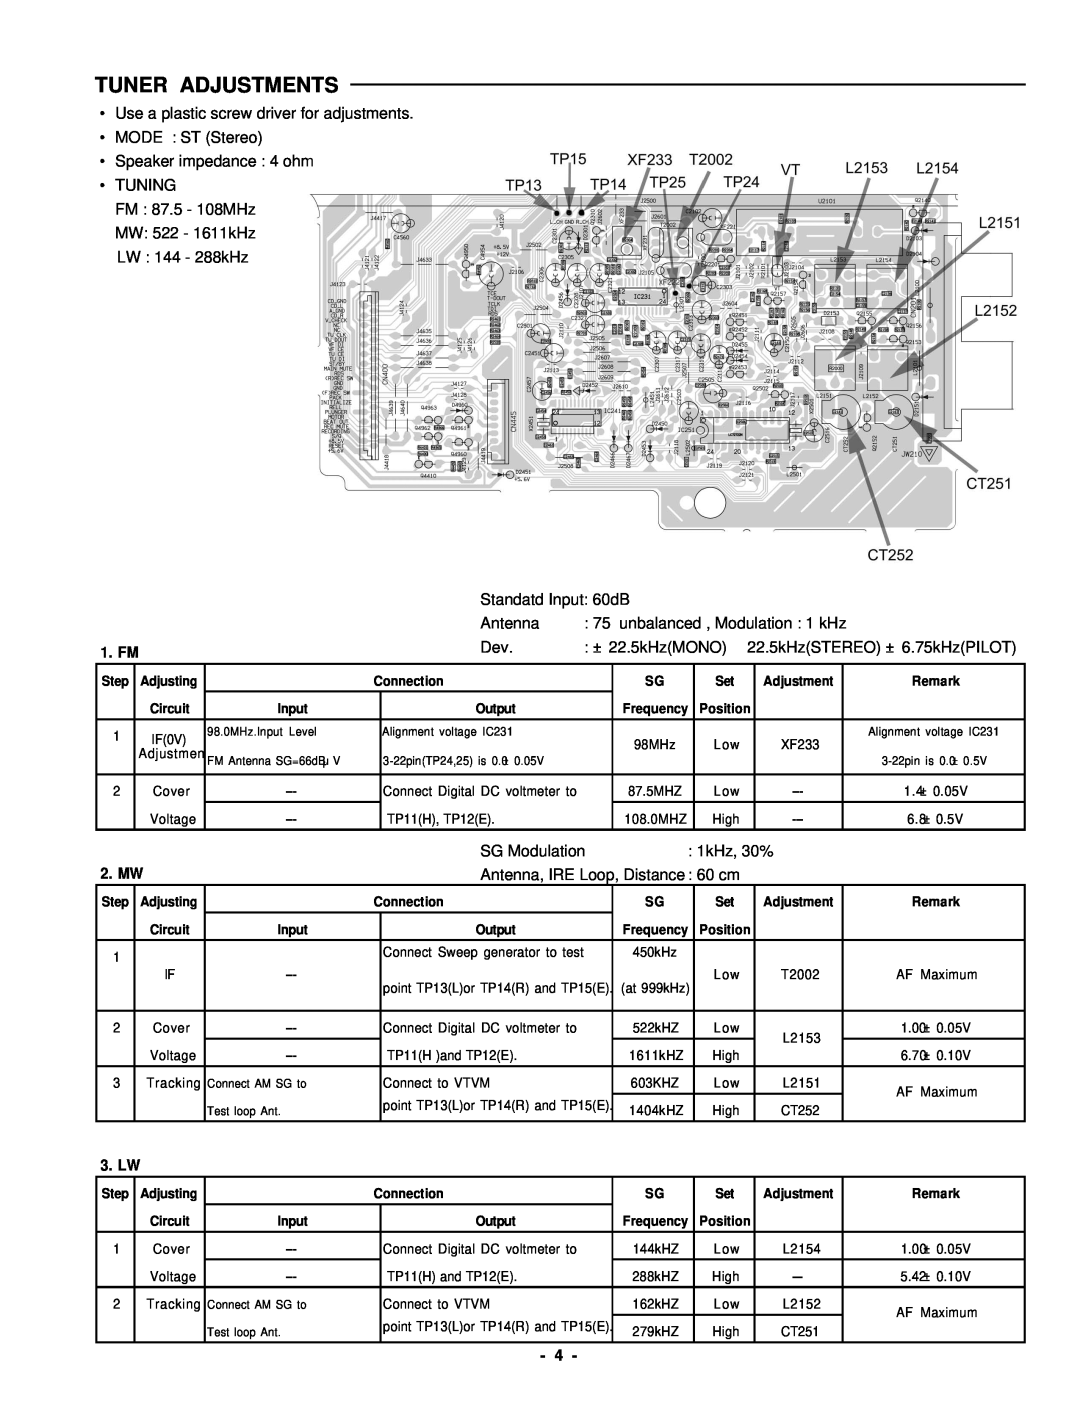 Sanyo DC-DA370 service manual Tuner Adjustments, 1. FM, 2. MW 